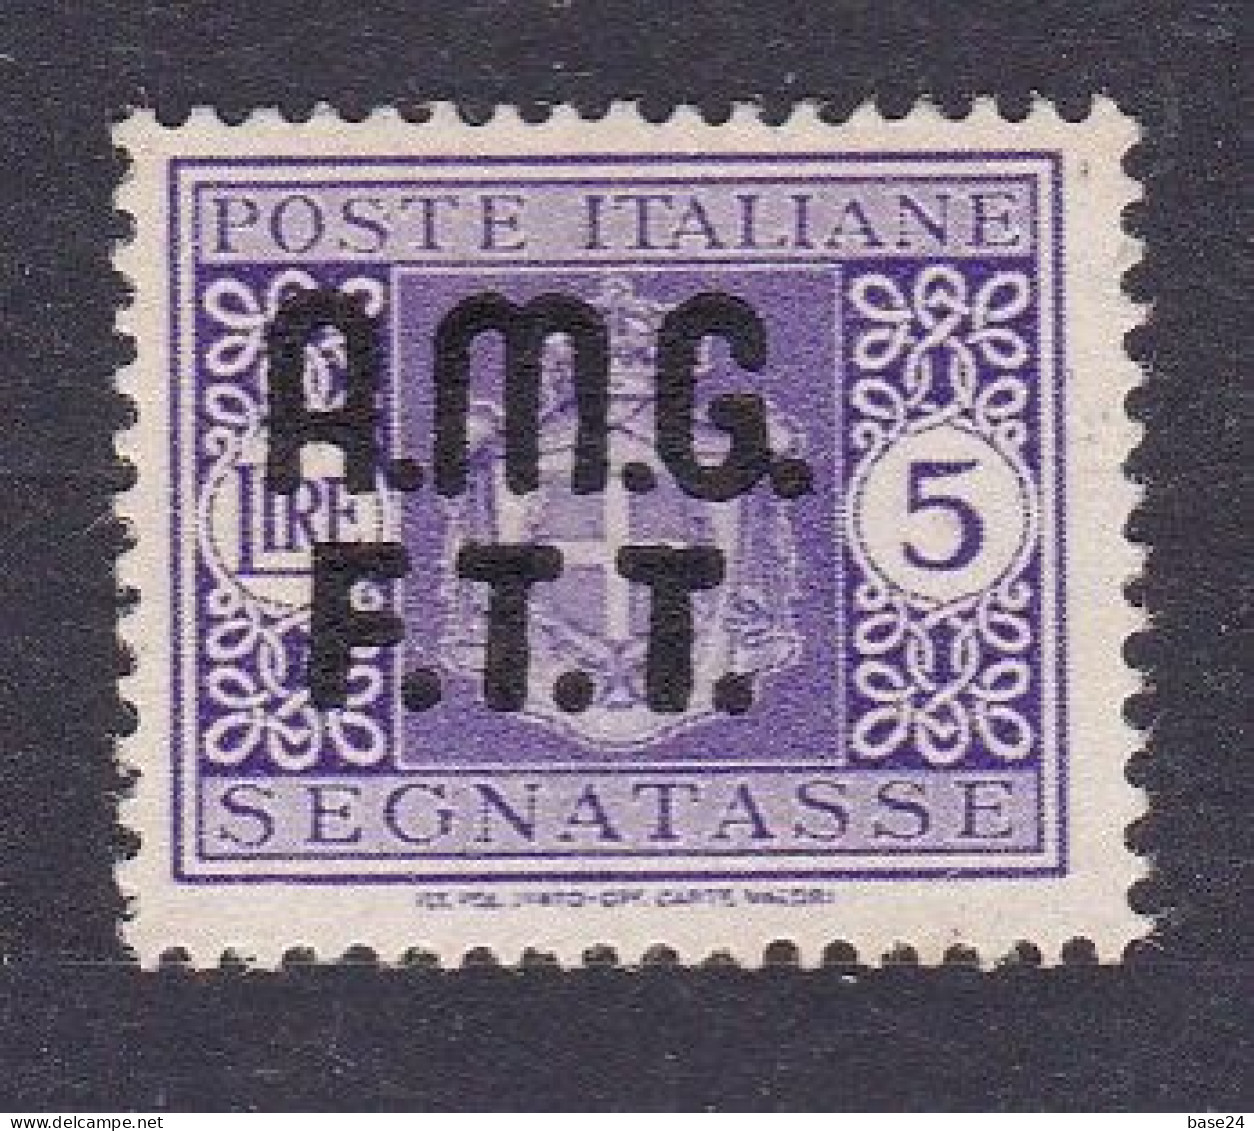 1947 Italia Italy Trieste A SEGNATASSE 4A  POSTAGE DUE 5 Lire Violetto Senza Filigrana MLH* Certif Biondi, Firma A.Diena - Segnatasse